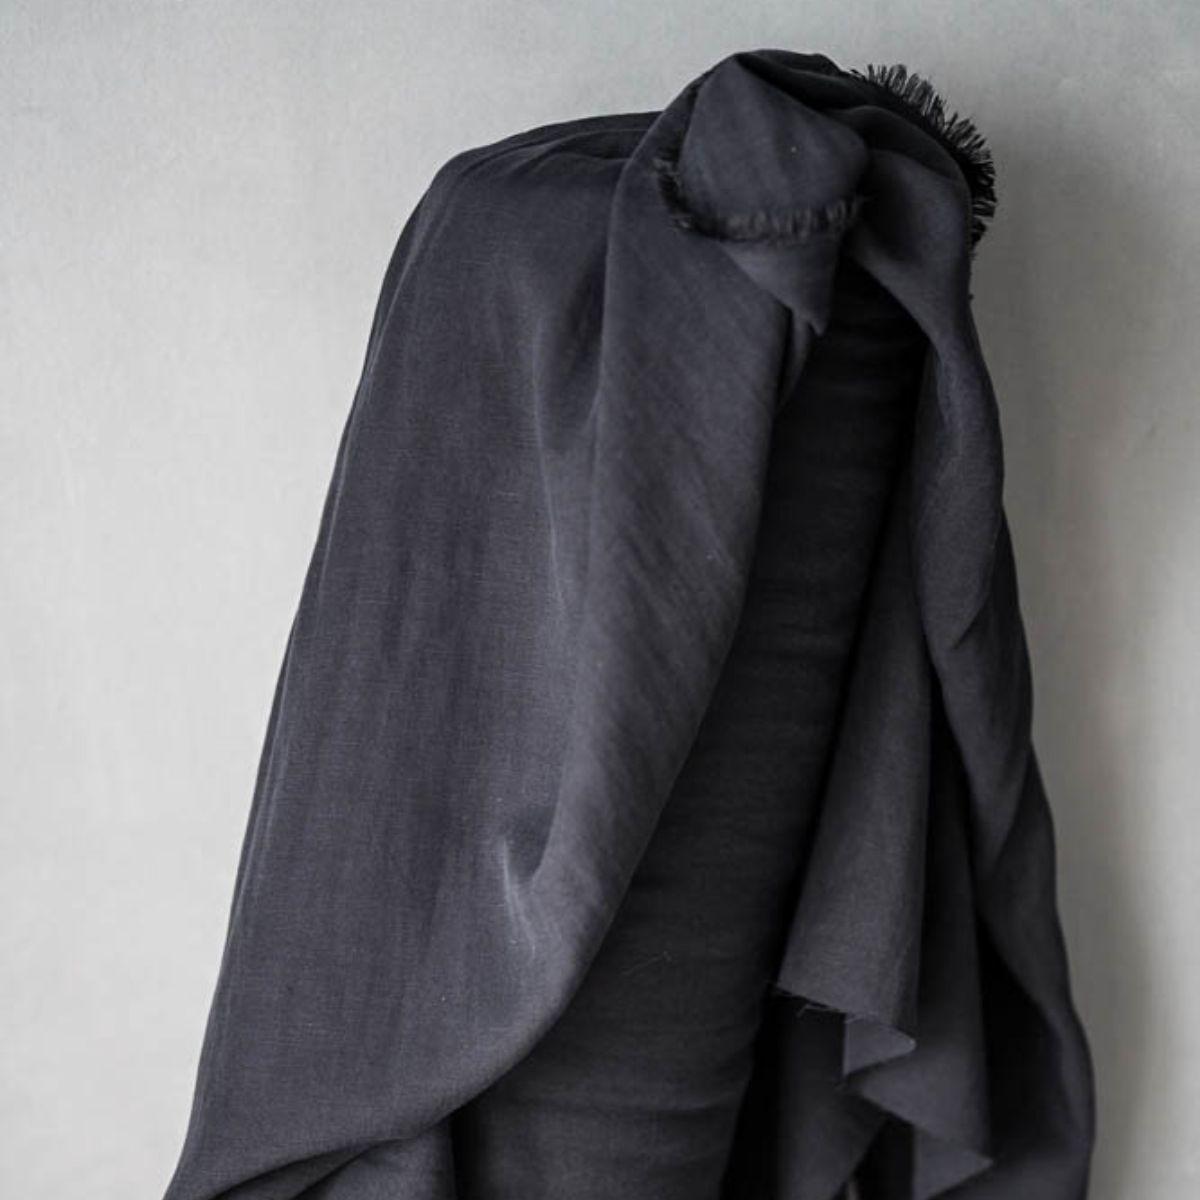 Merchant & Mills-Tencel/Linen in Black-fabric-gather here online